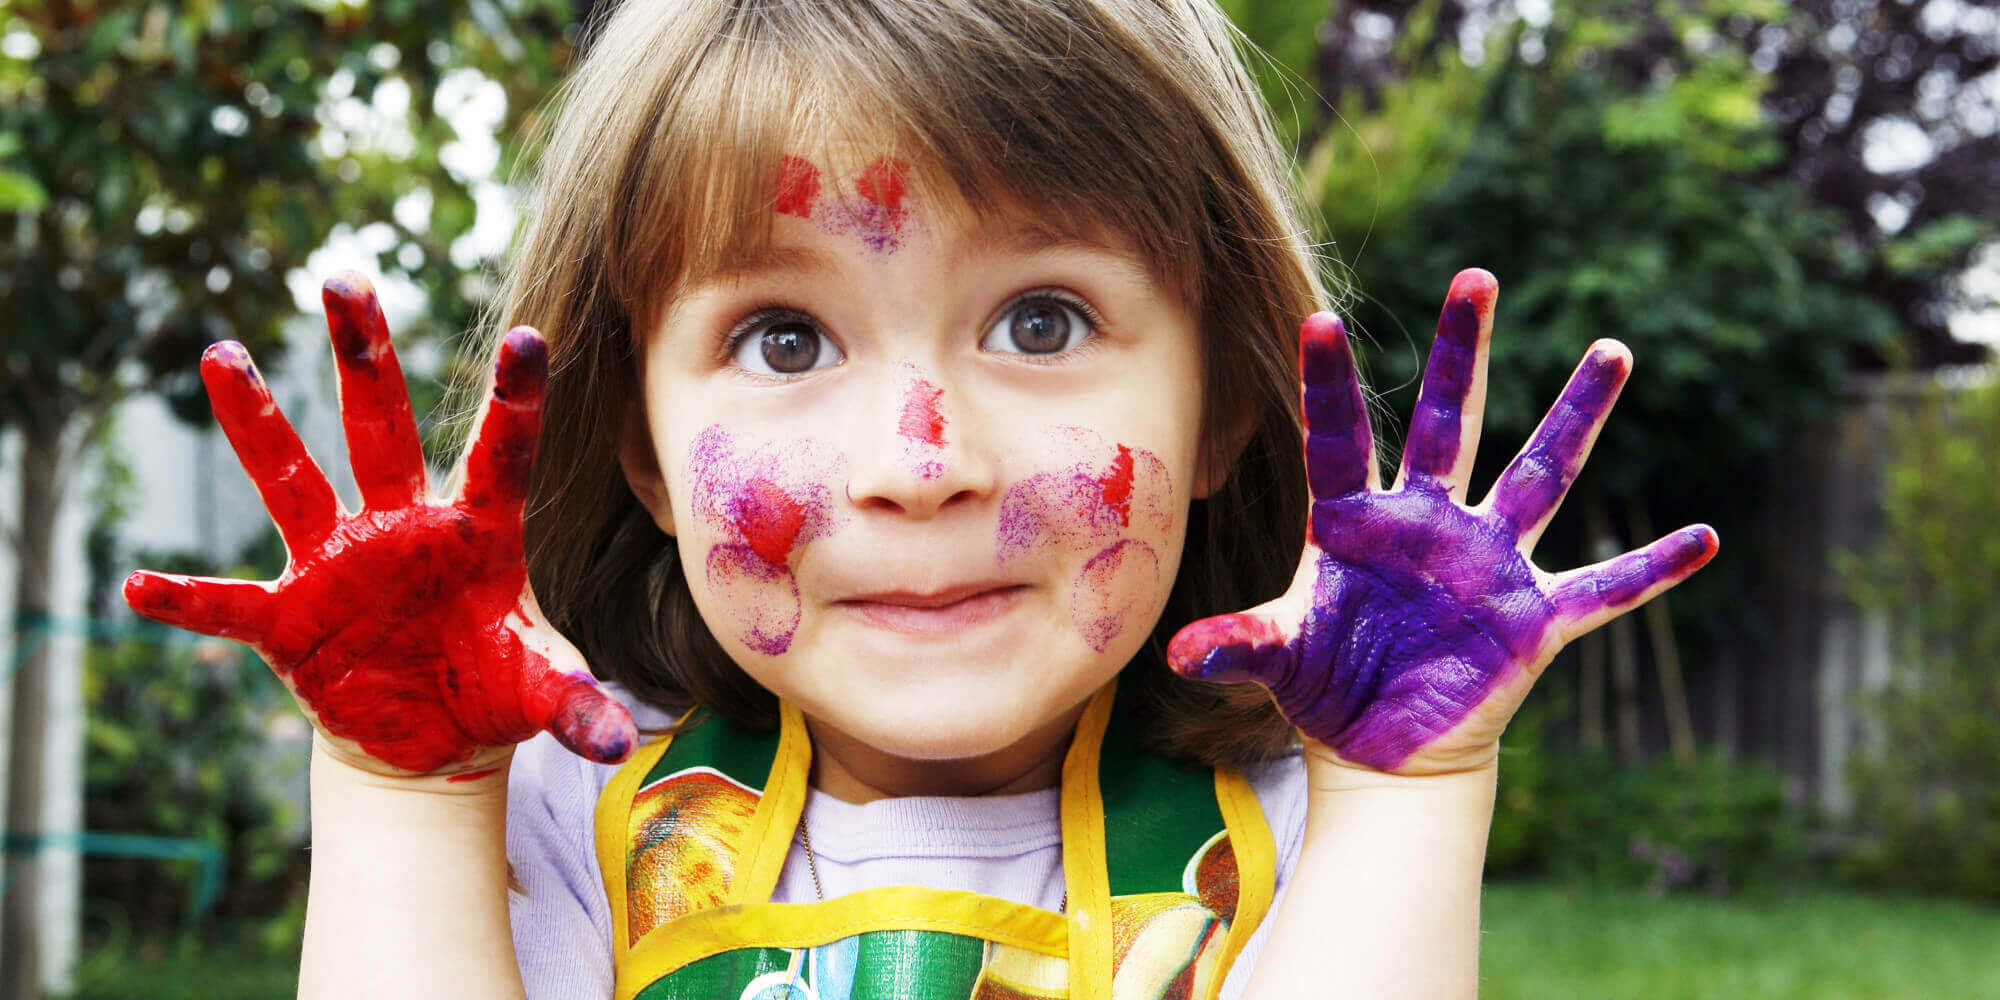 Lille pige med maling på hænderne